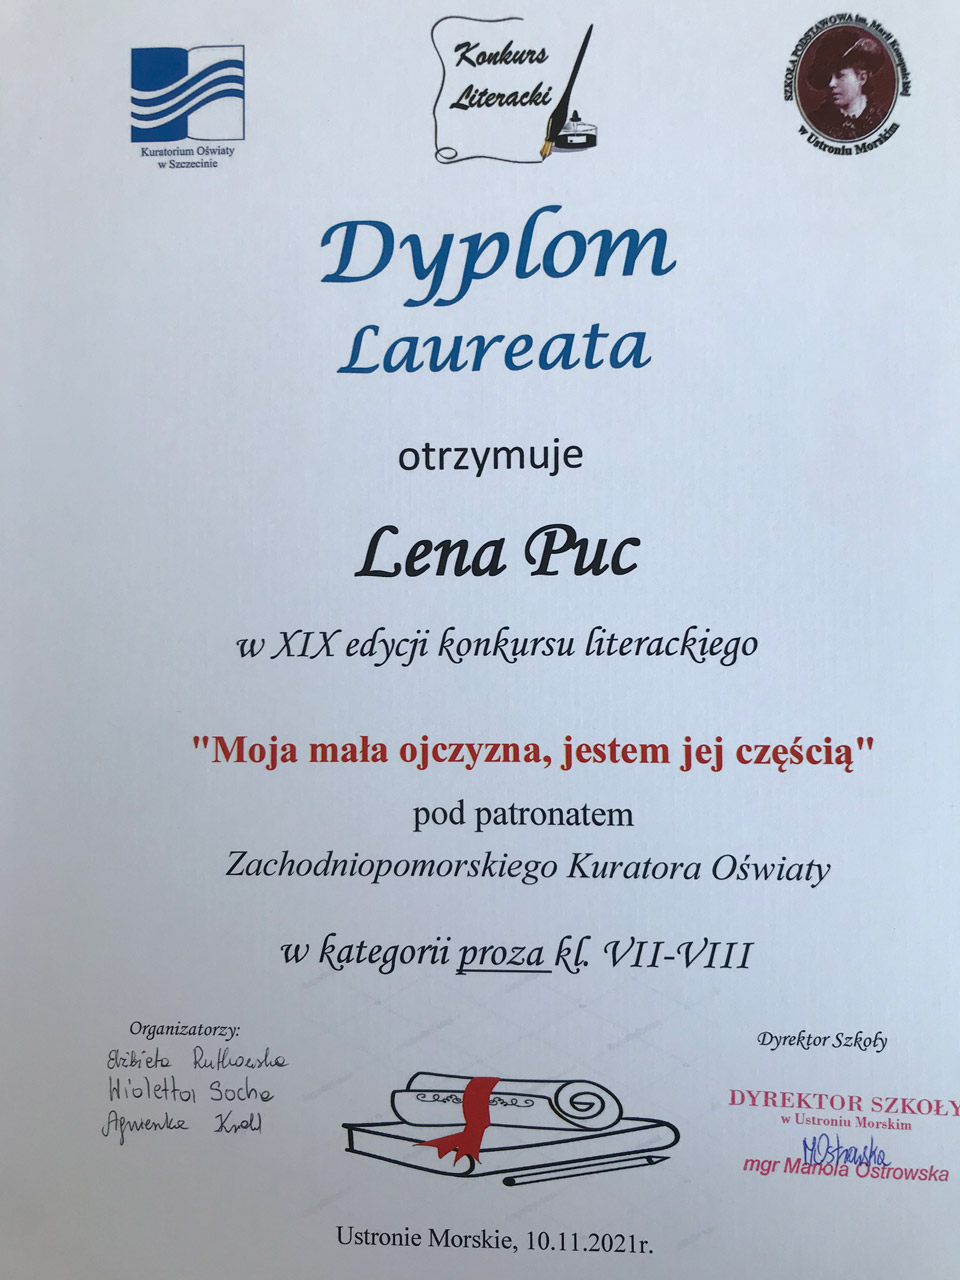 Grafika przedstawia dyplom dla laureata konkursu literackiego - Leny Puc